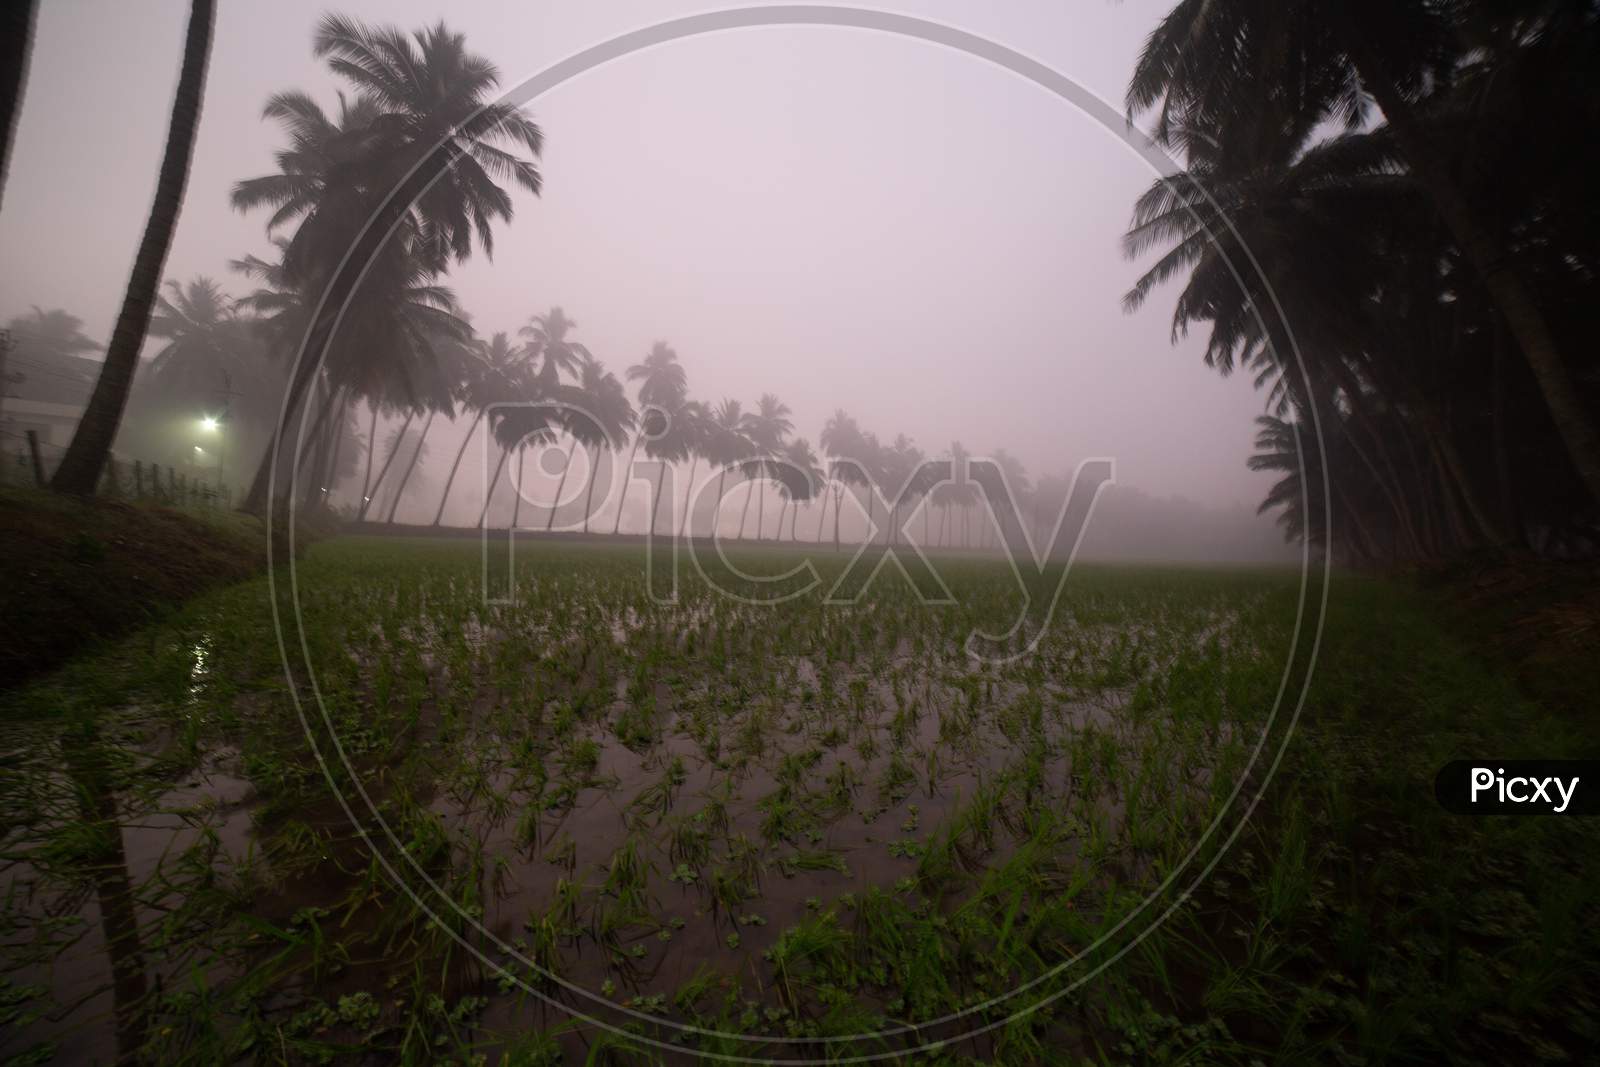 Landscape of paddy fields in Palakollu during heavy fog